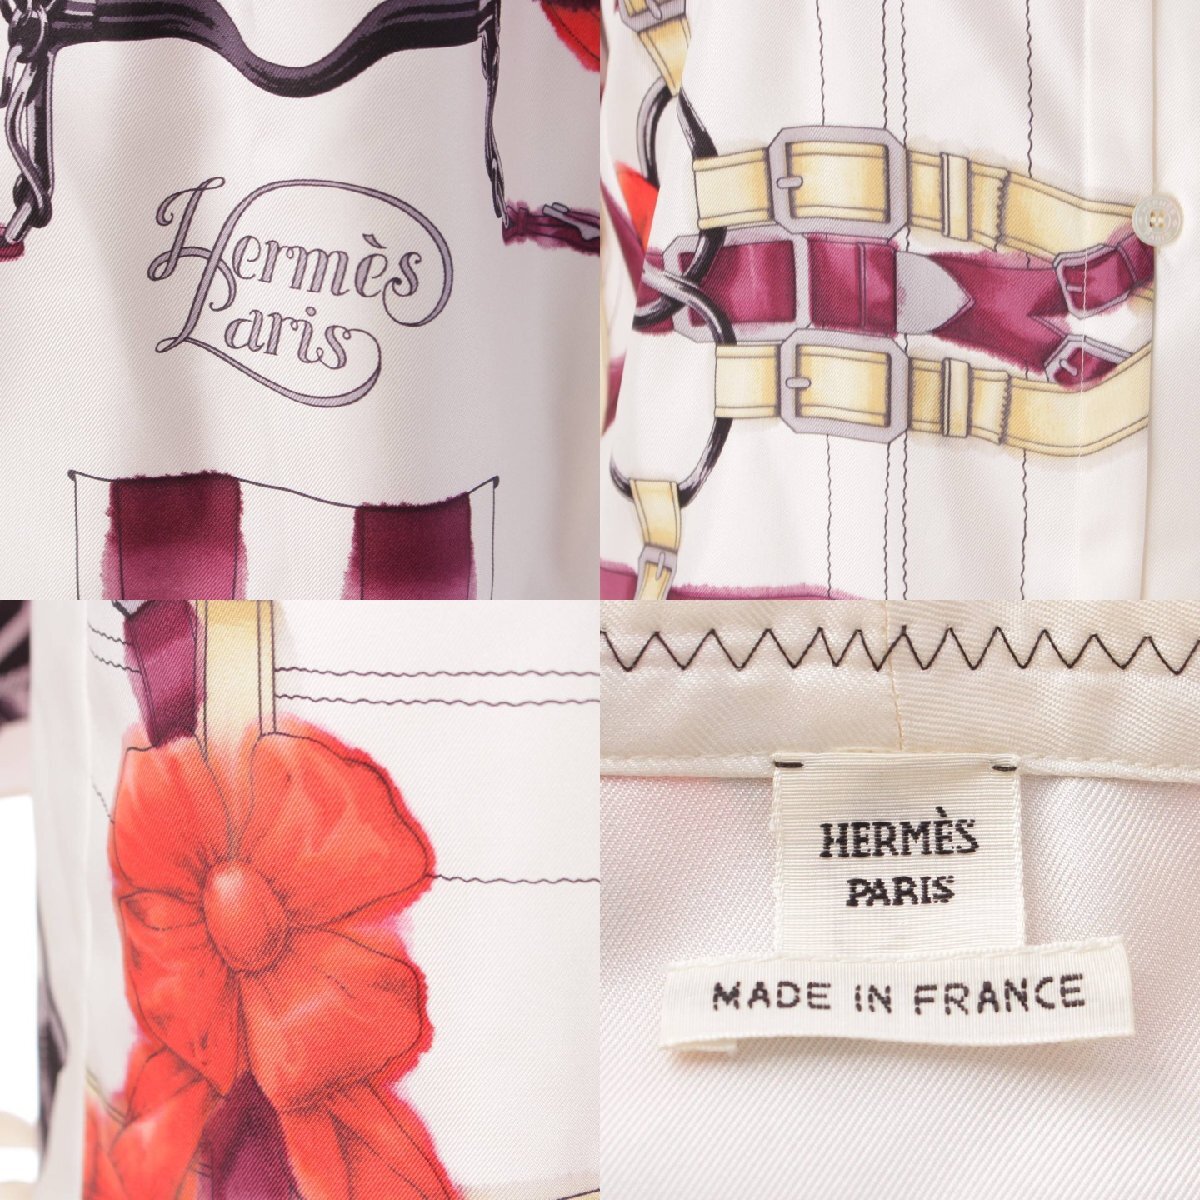 [ Hermes ]Hermes 18 год grand manege шелк bow Thai блуза рубашка белый 34 [ б/у ][ стандартный товар гарантия ]202586